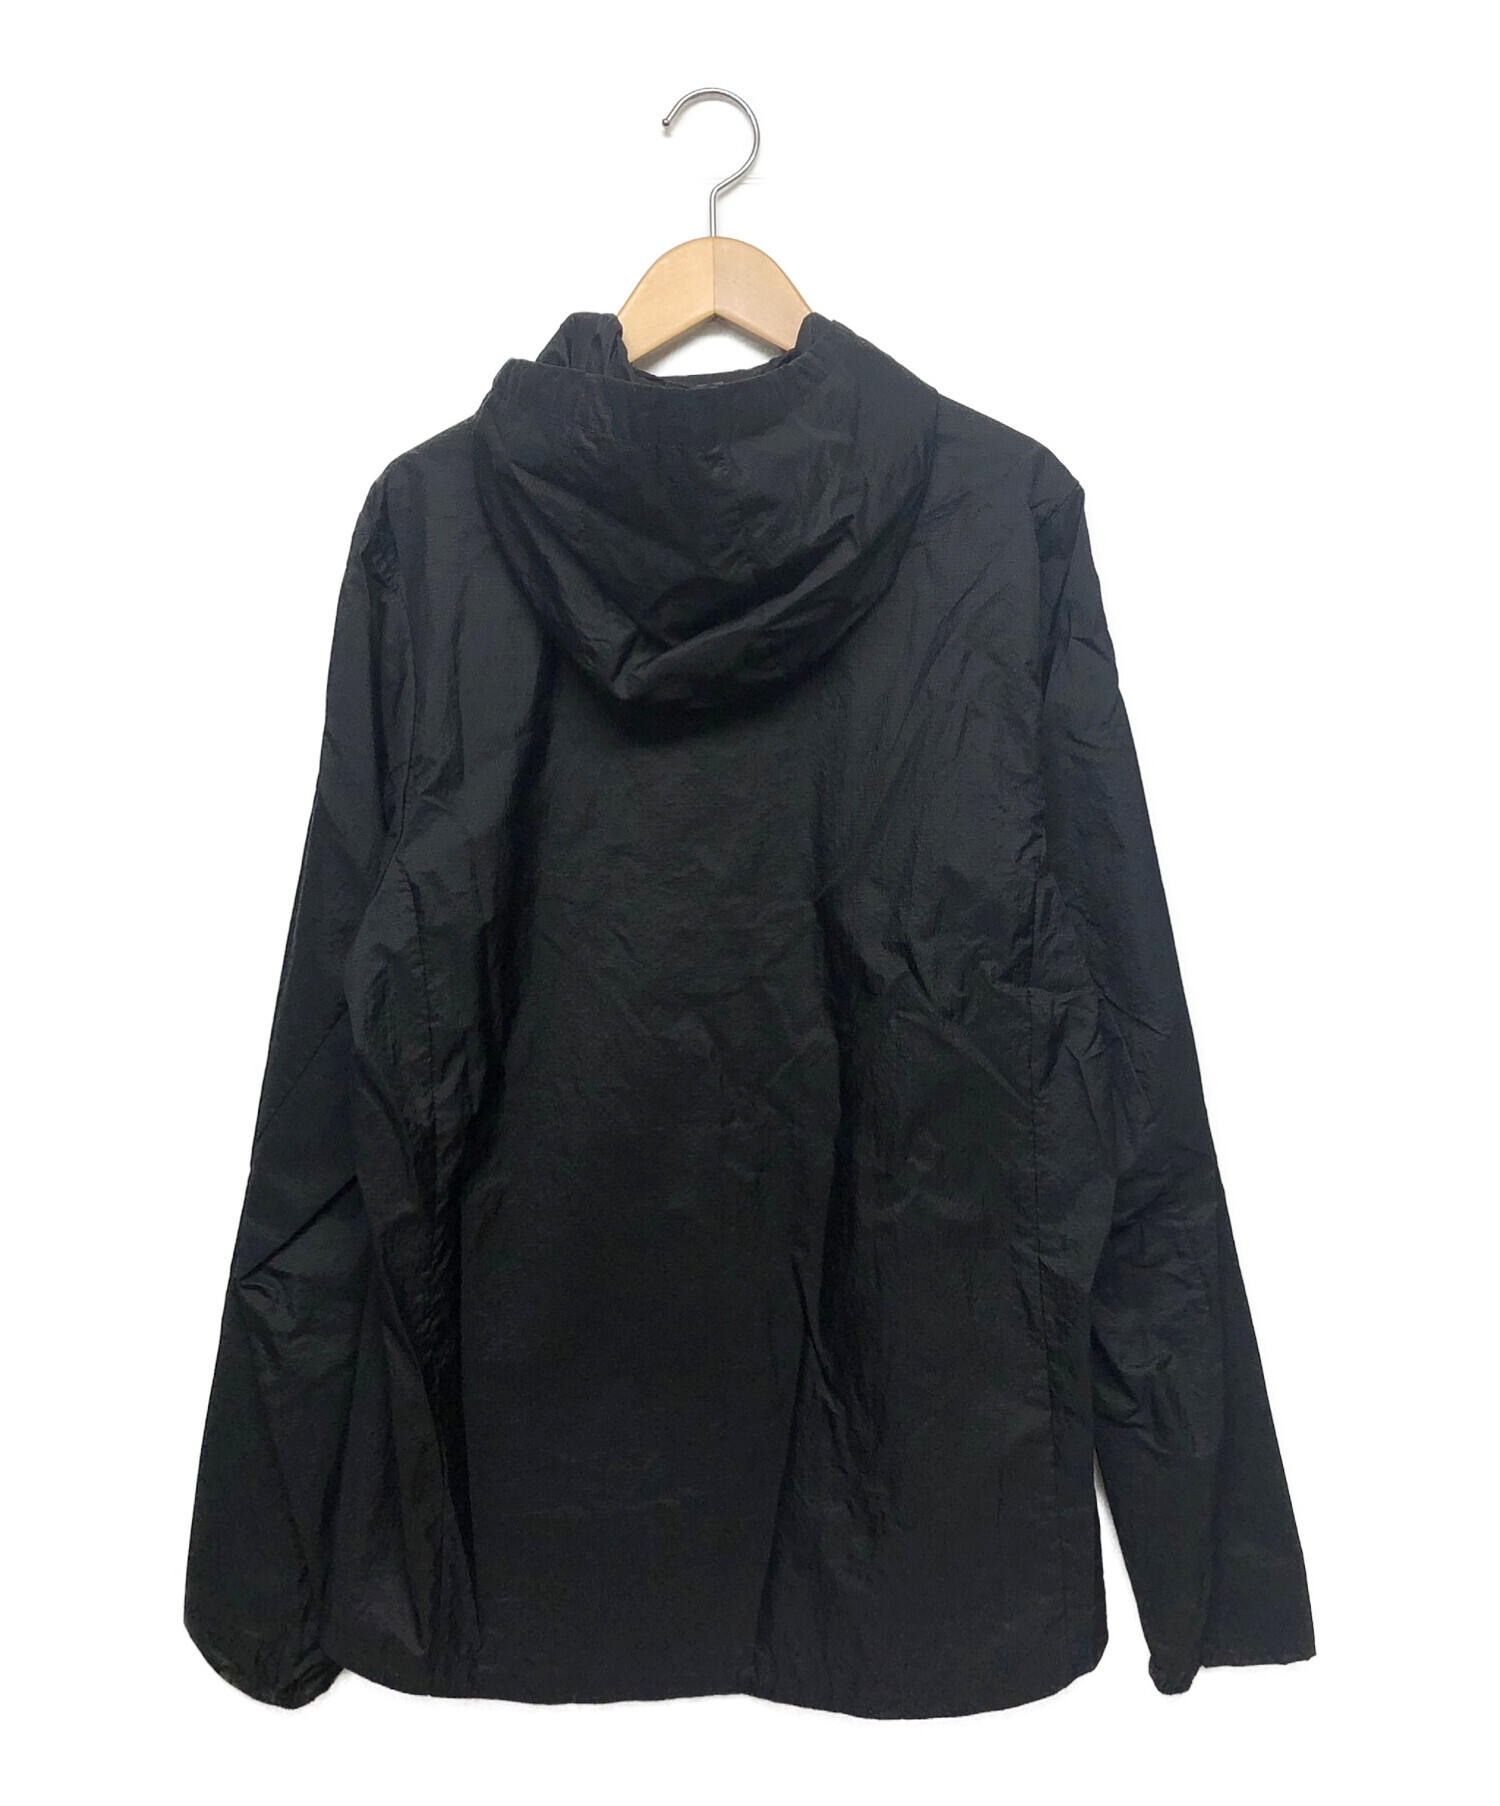 Patagonia (パタゴニア) フーディニジャケット ブラック サイズ:S